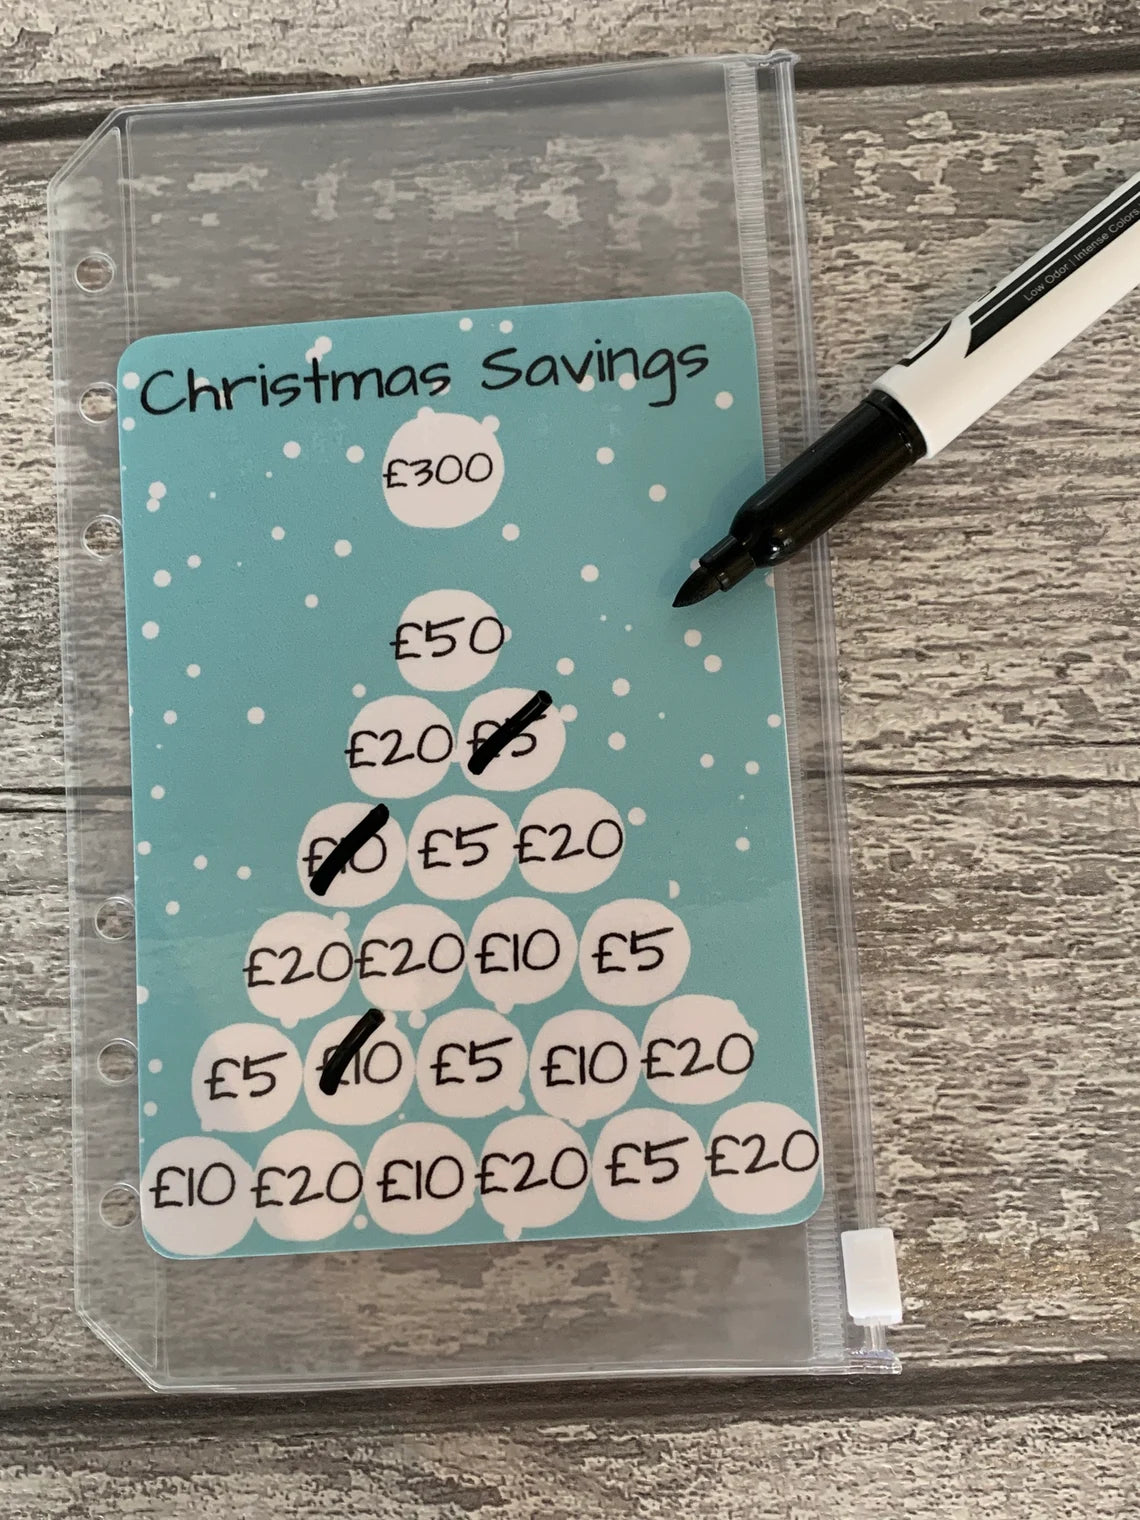 Christmas Savings Challenge - Save £300 or £500